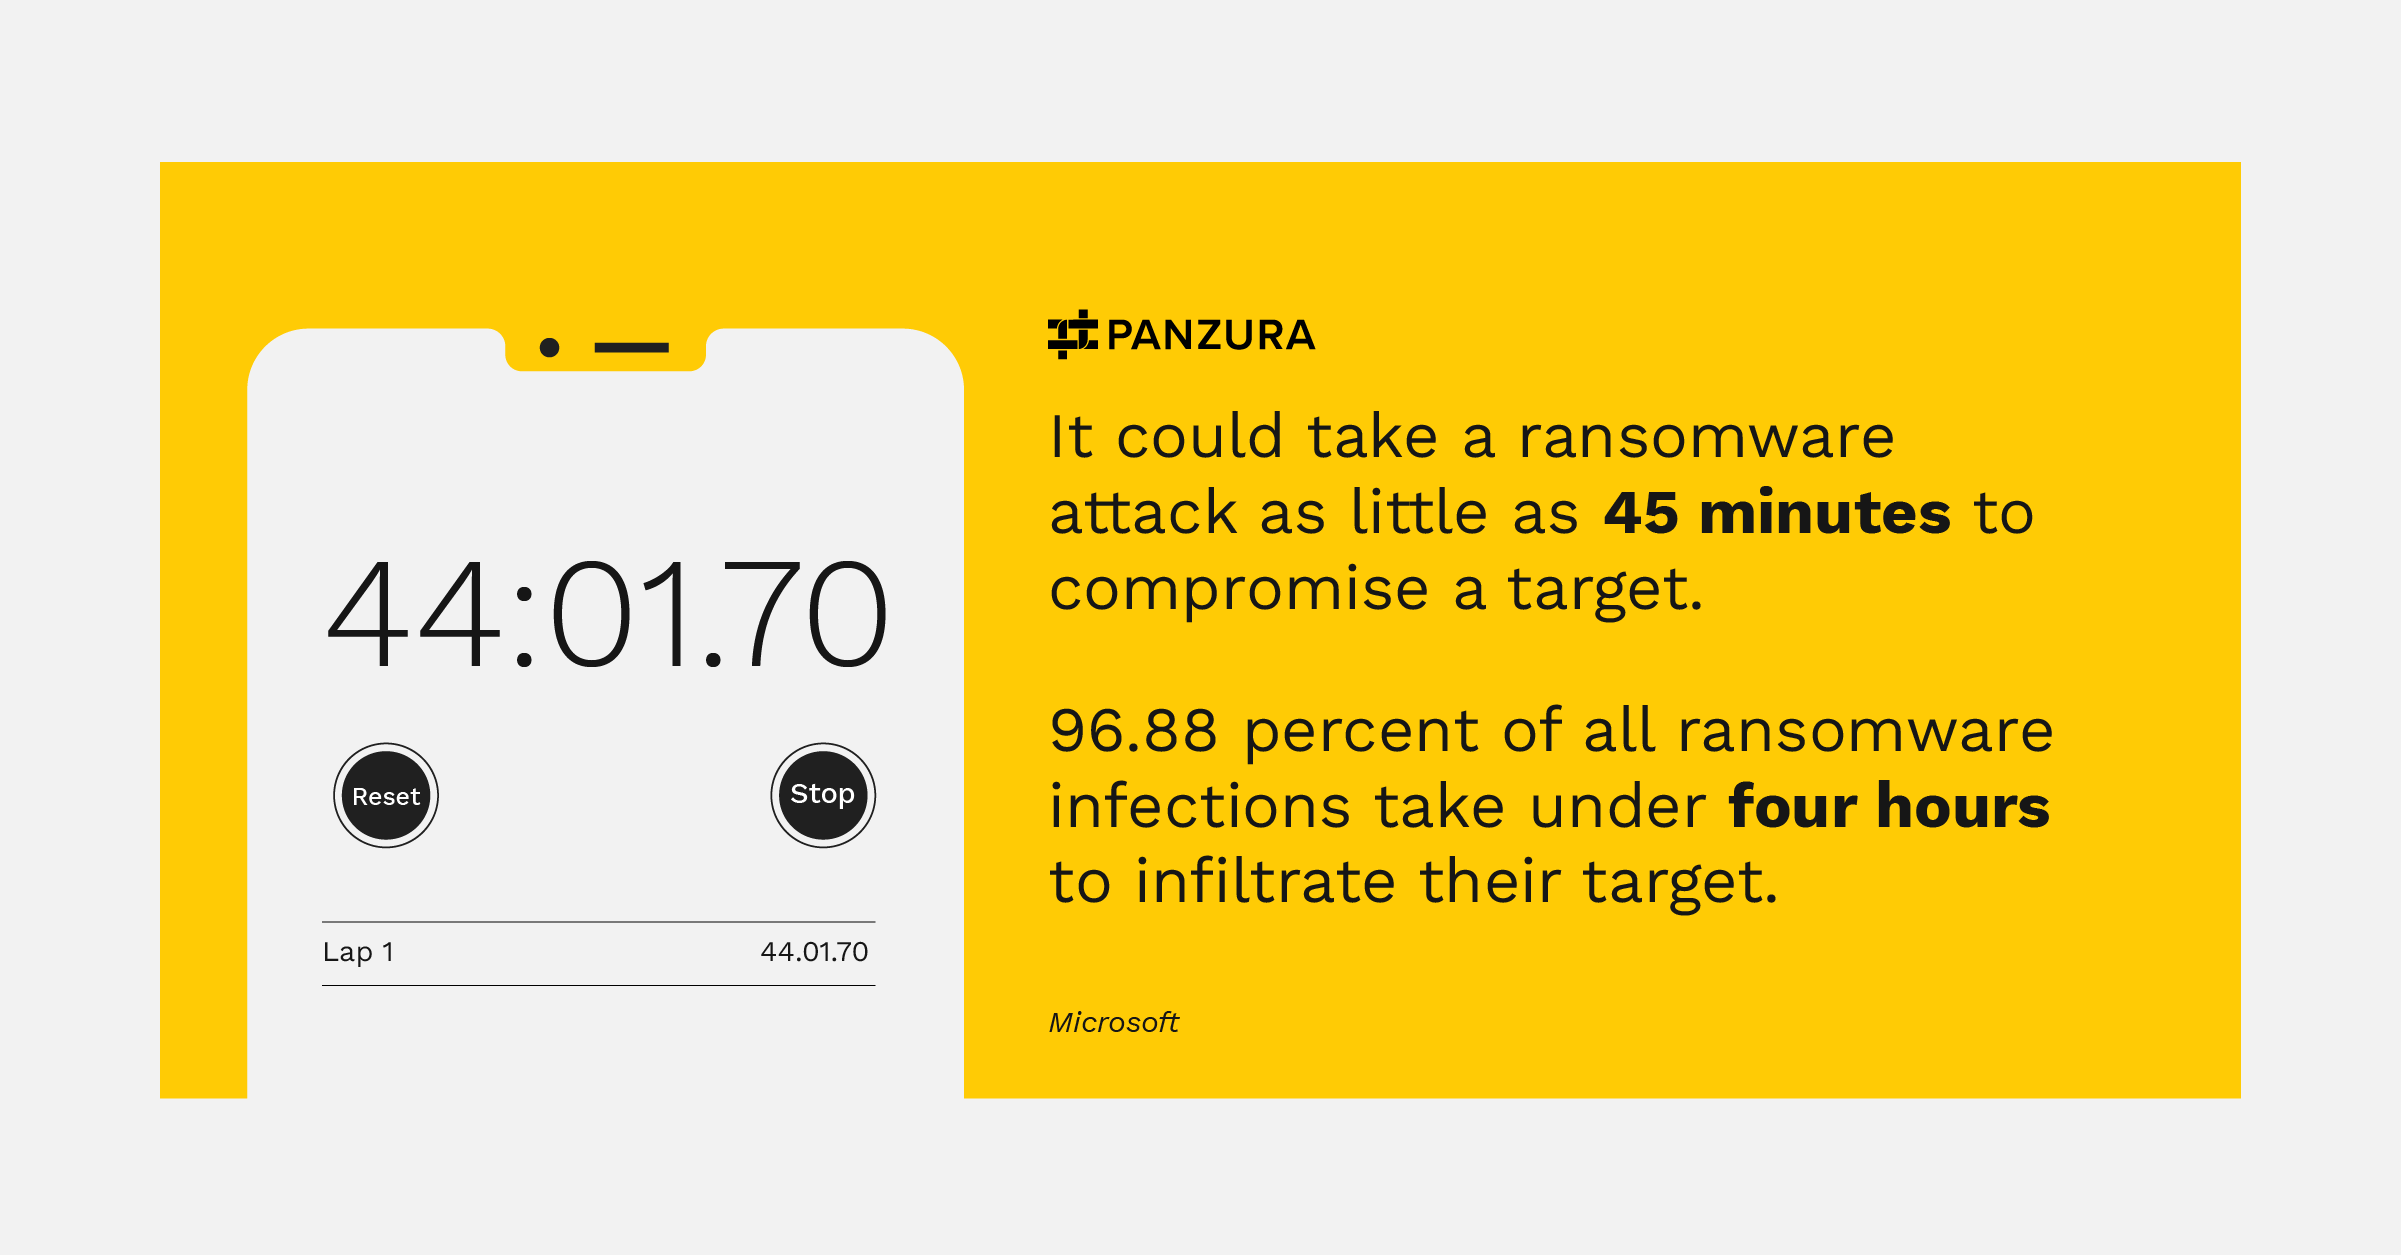 Infografía sobre el ransomware: un ataque puede tardar sólo 45 minutos en comprometer un objetivo